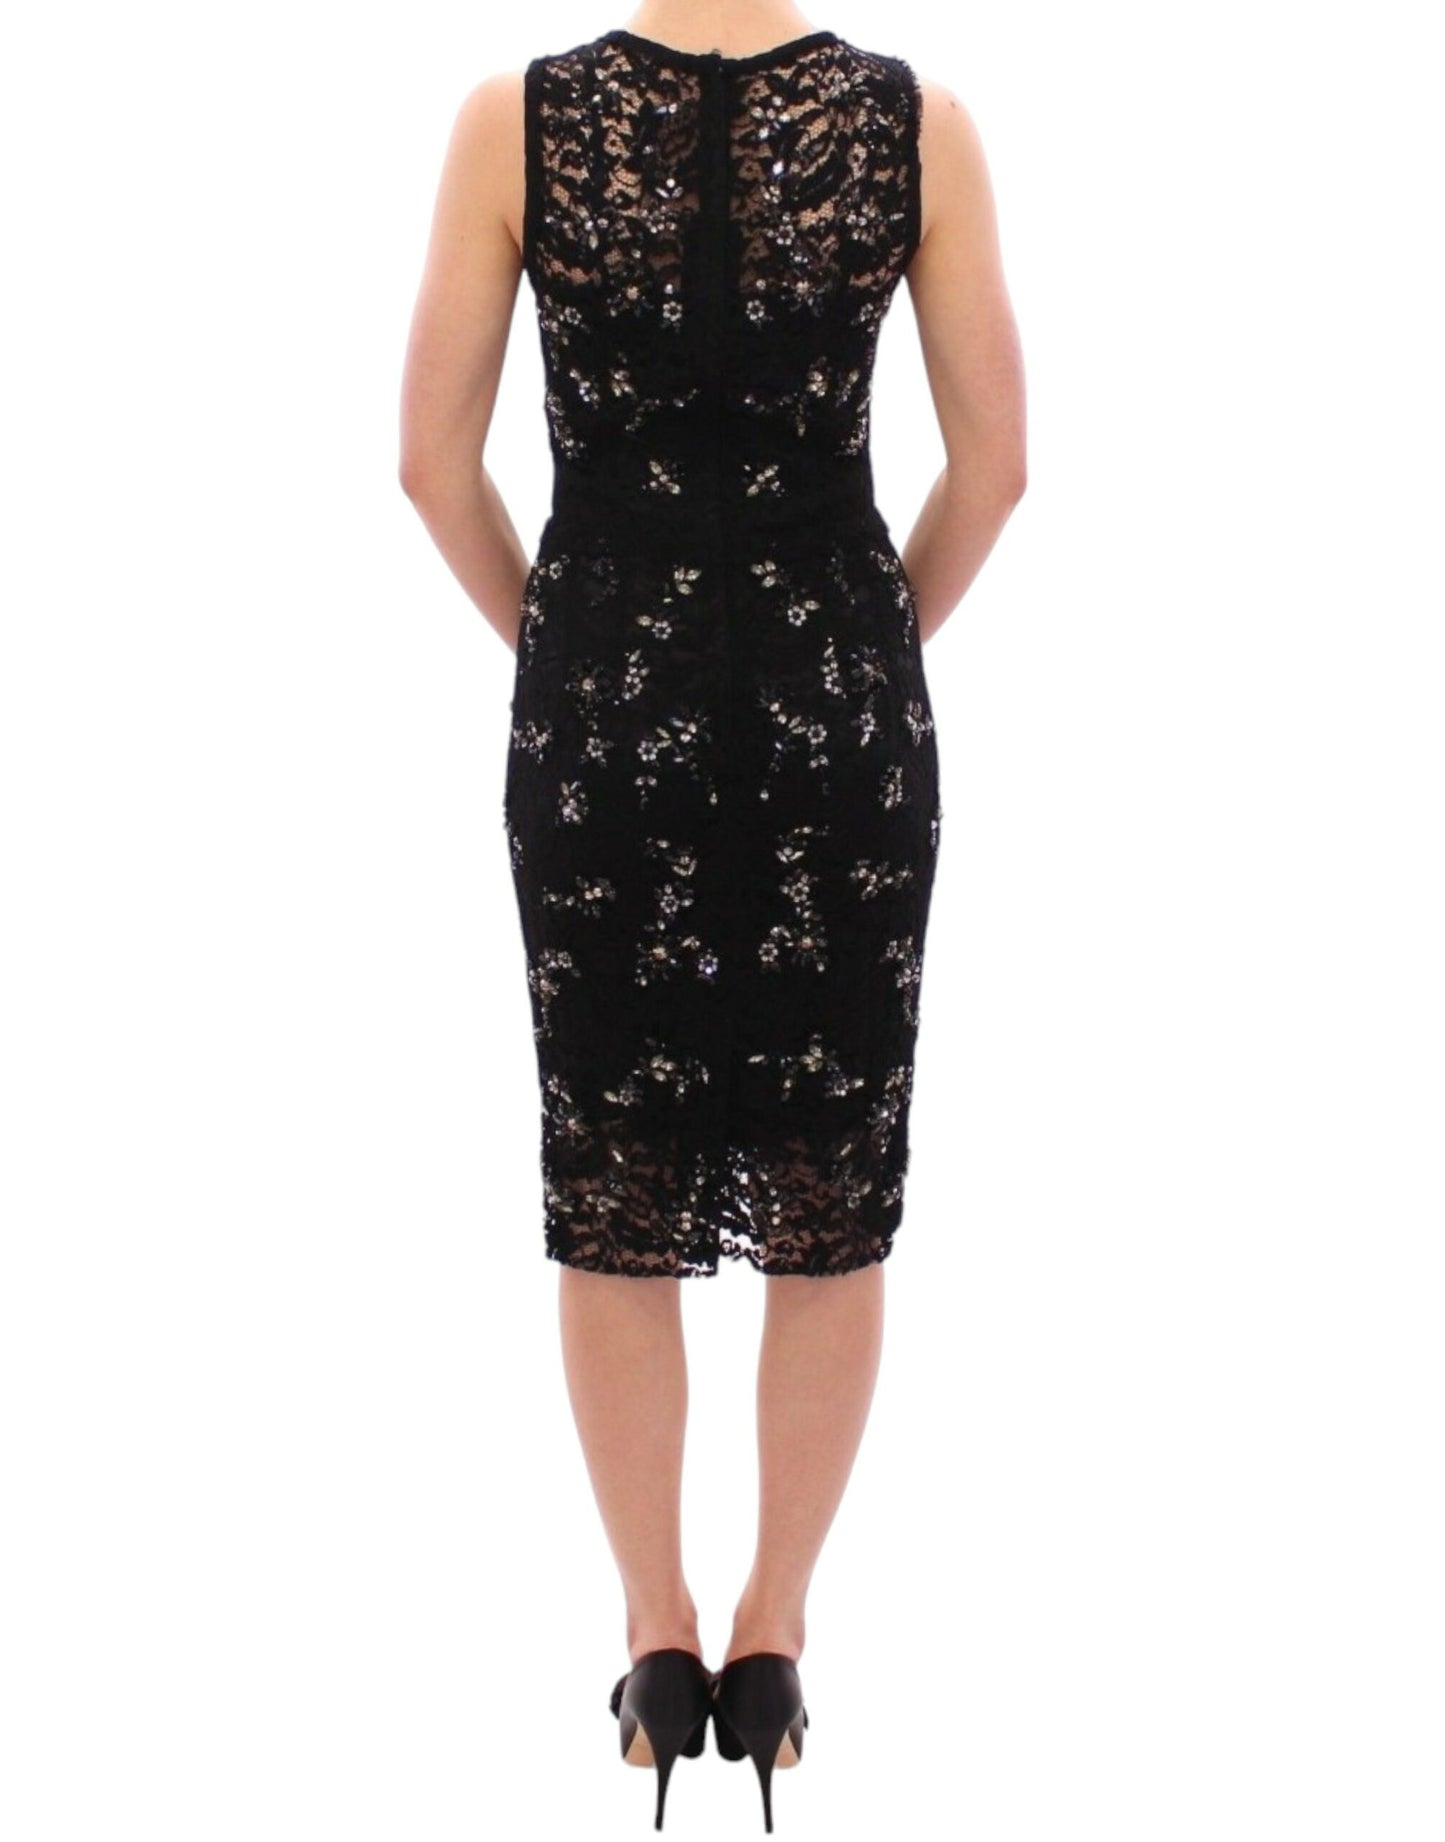 Elegant Black Floral Lace Crystal Dress